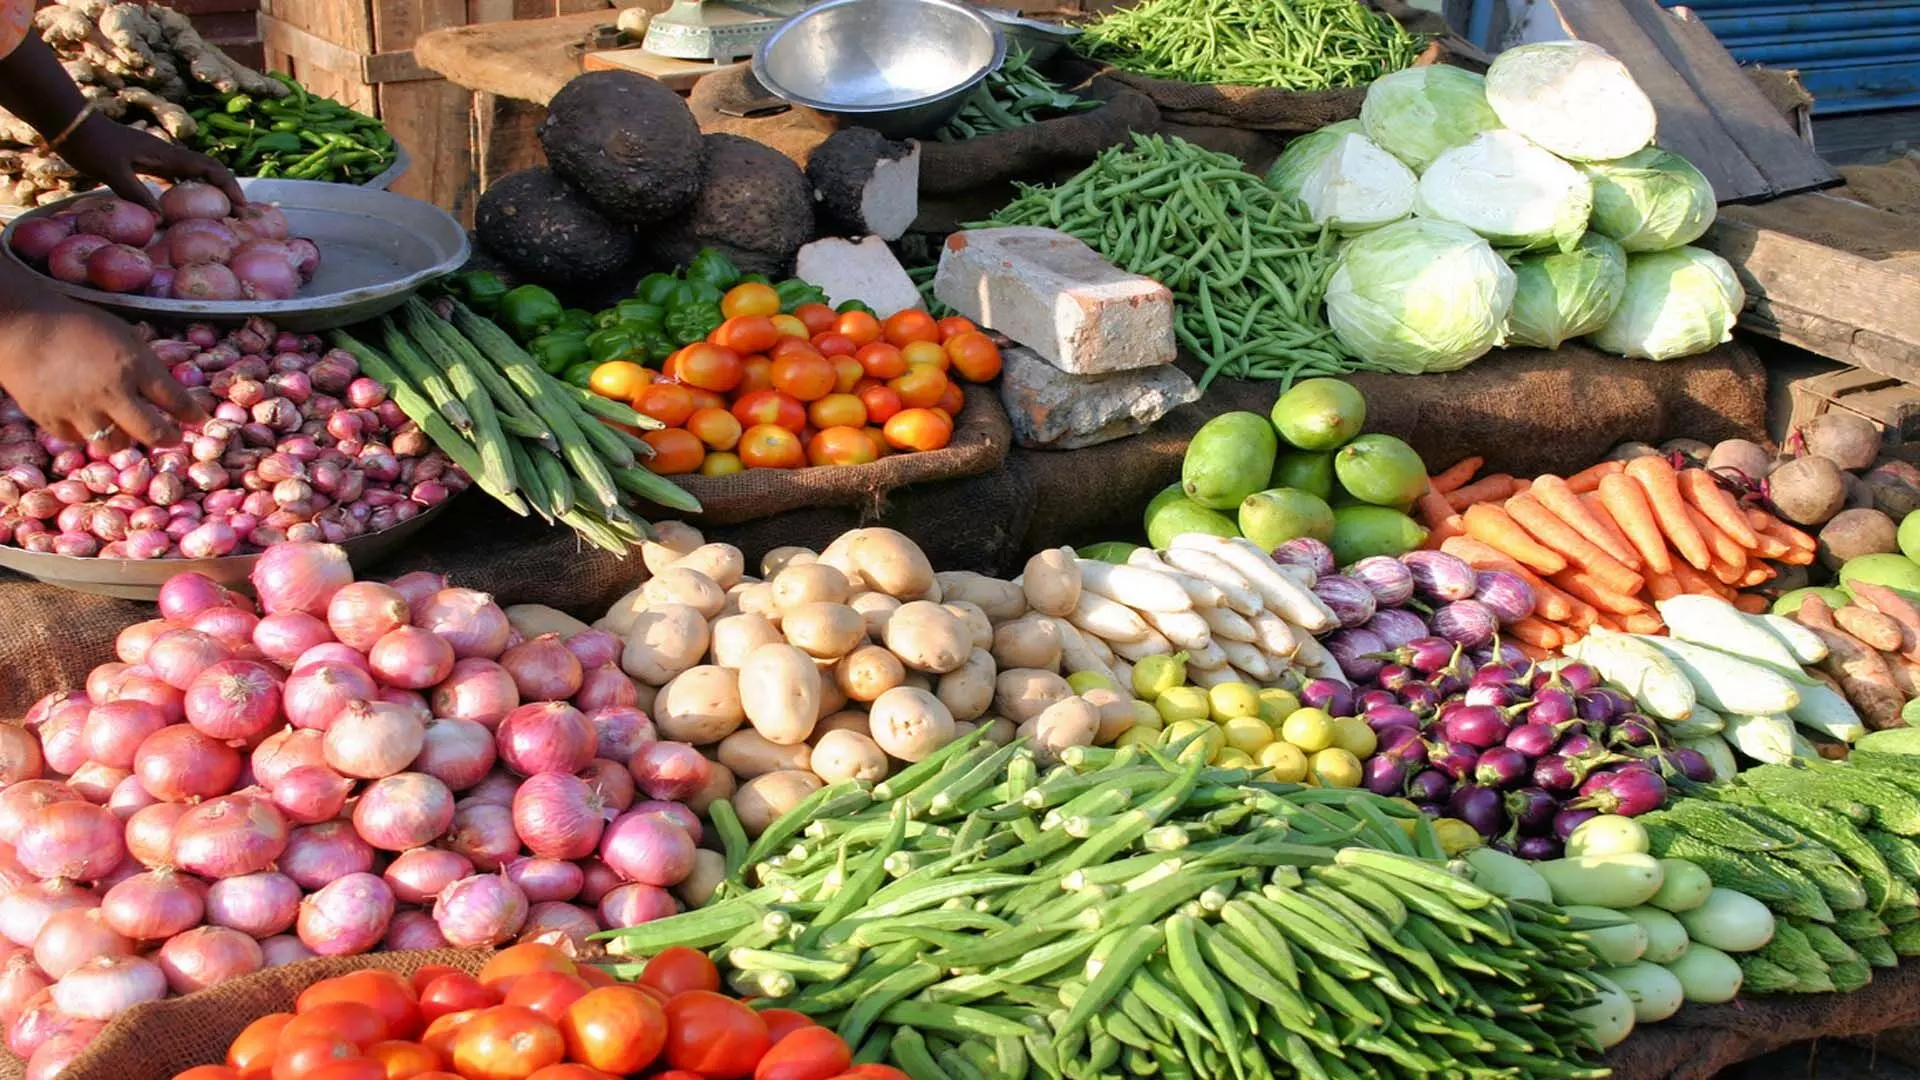 Kolkata News: टास्क फोर्स की कार्रवाई के बावजूद कोलकाता में सब्जियों की कीमतें आसमान छू रही